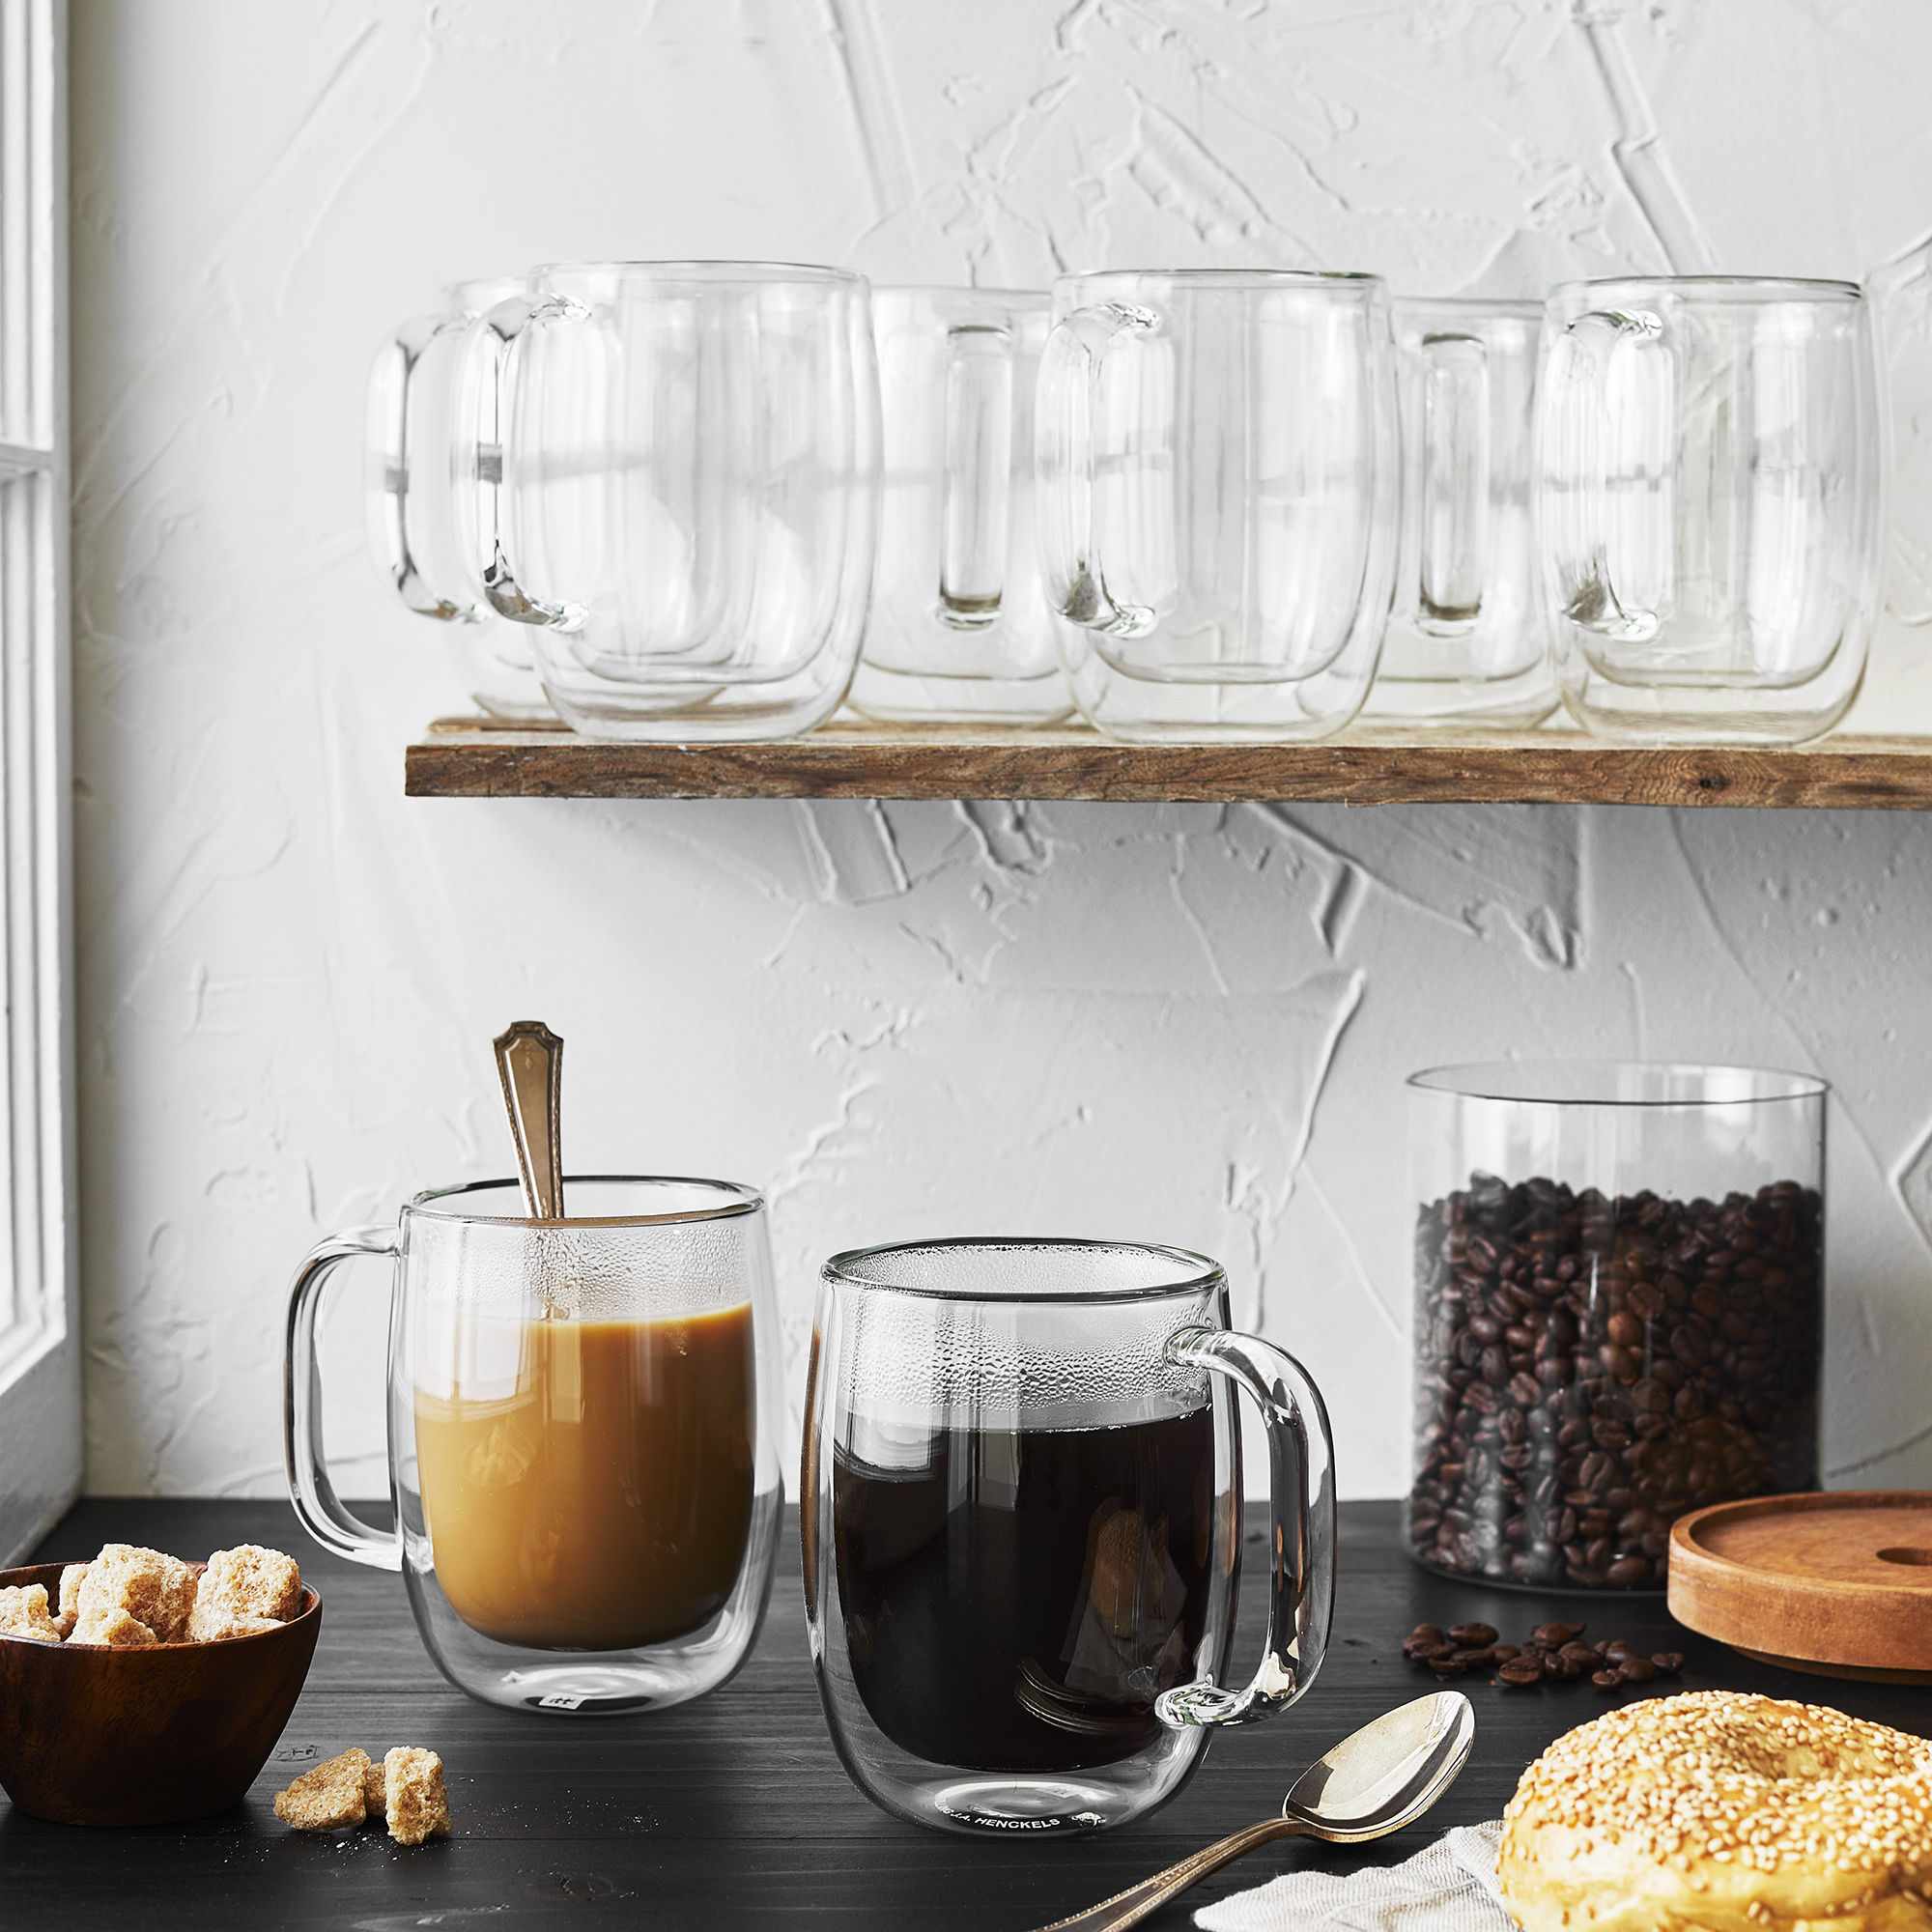 Buy ZWILLING Sorrento Double Wall Glassware Mug set